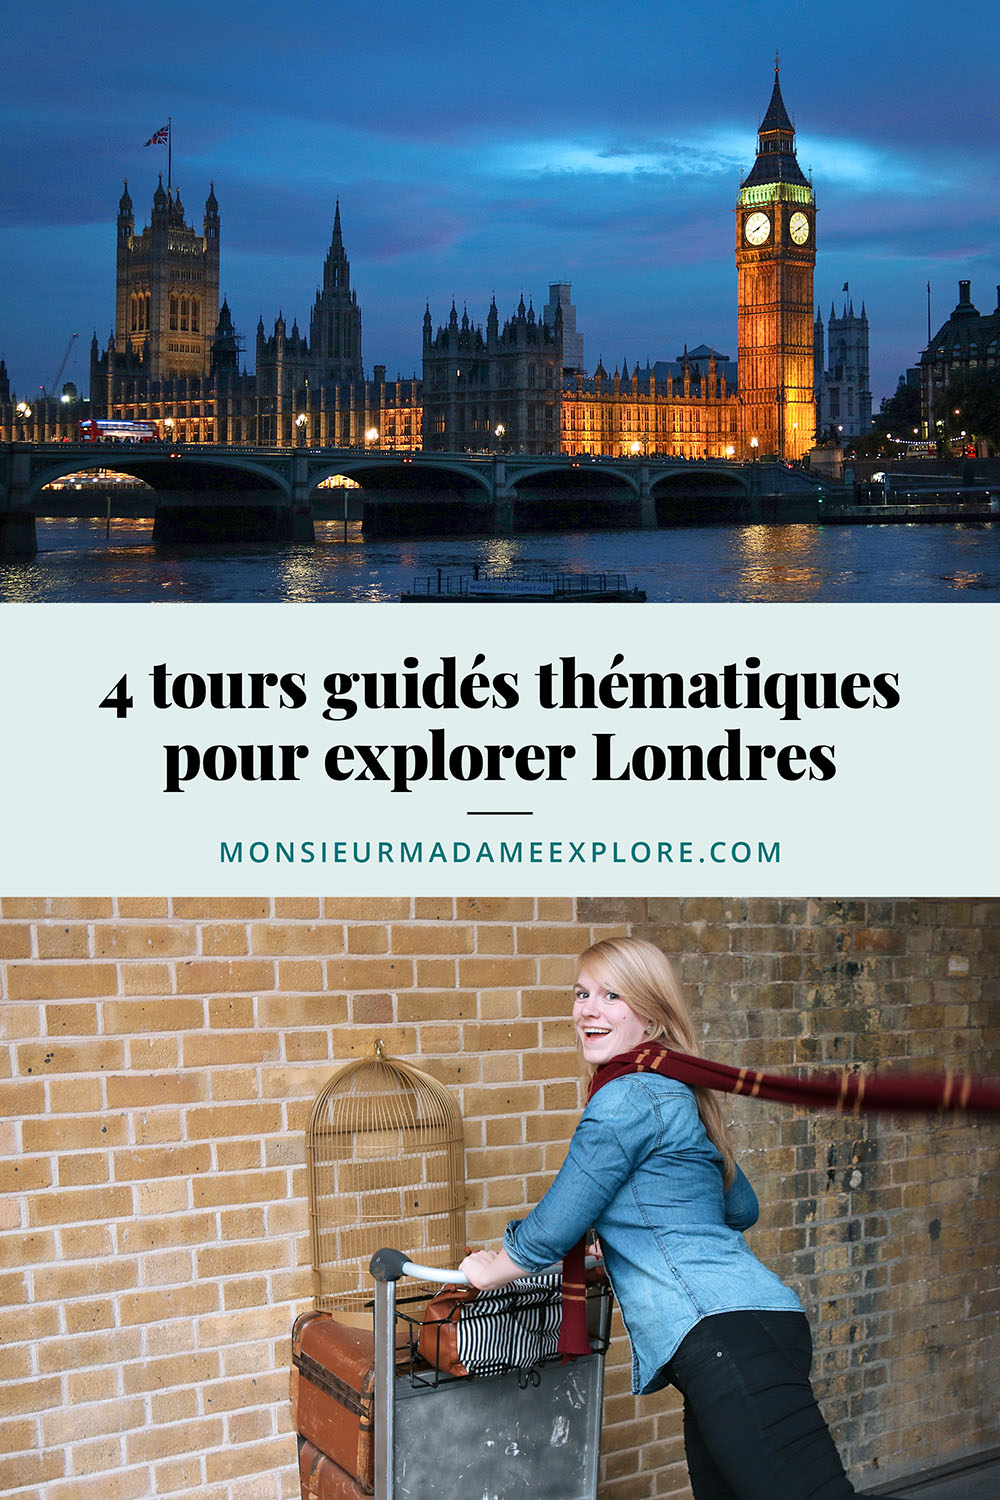 J'ai testé : 4 visites guidées à Londres, Monsieur+Madame Explore, Blogue de voyage, Angleterre, Royaume-Uni / 4 themed guided tours to explore London, England, UK